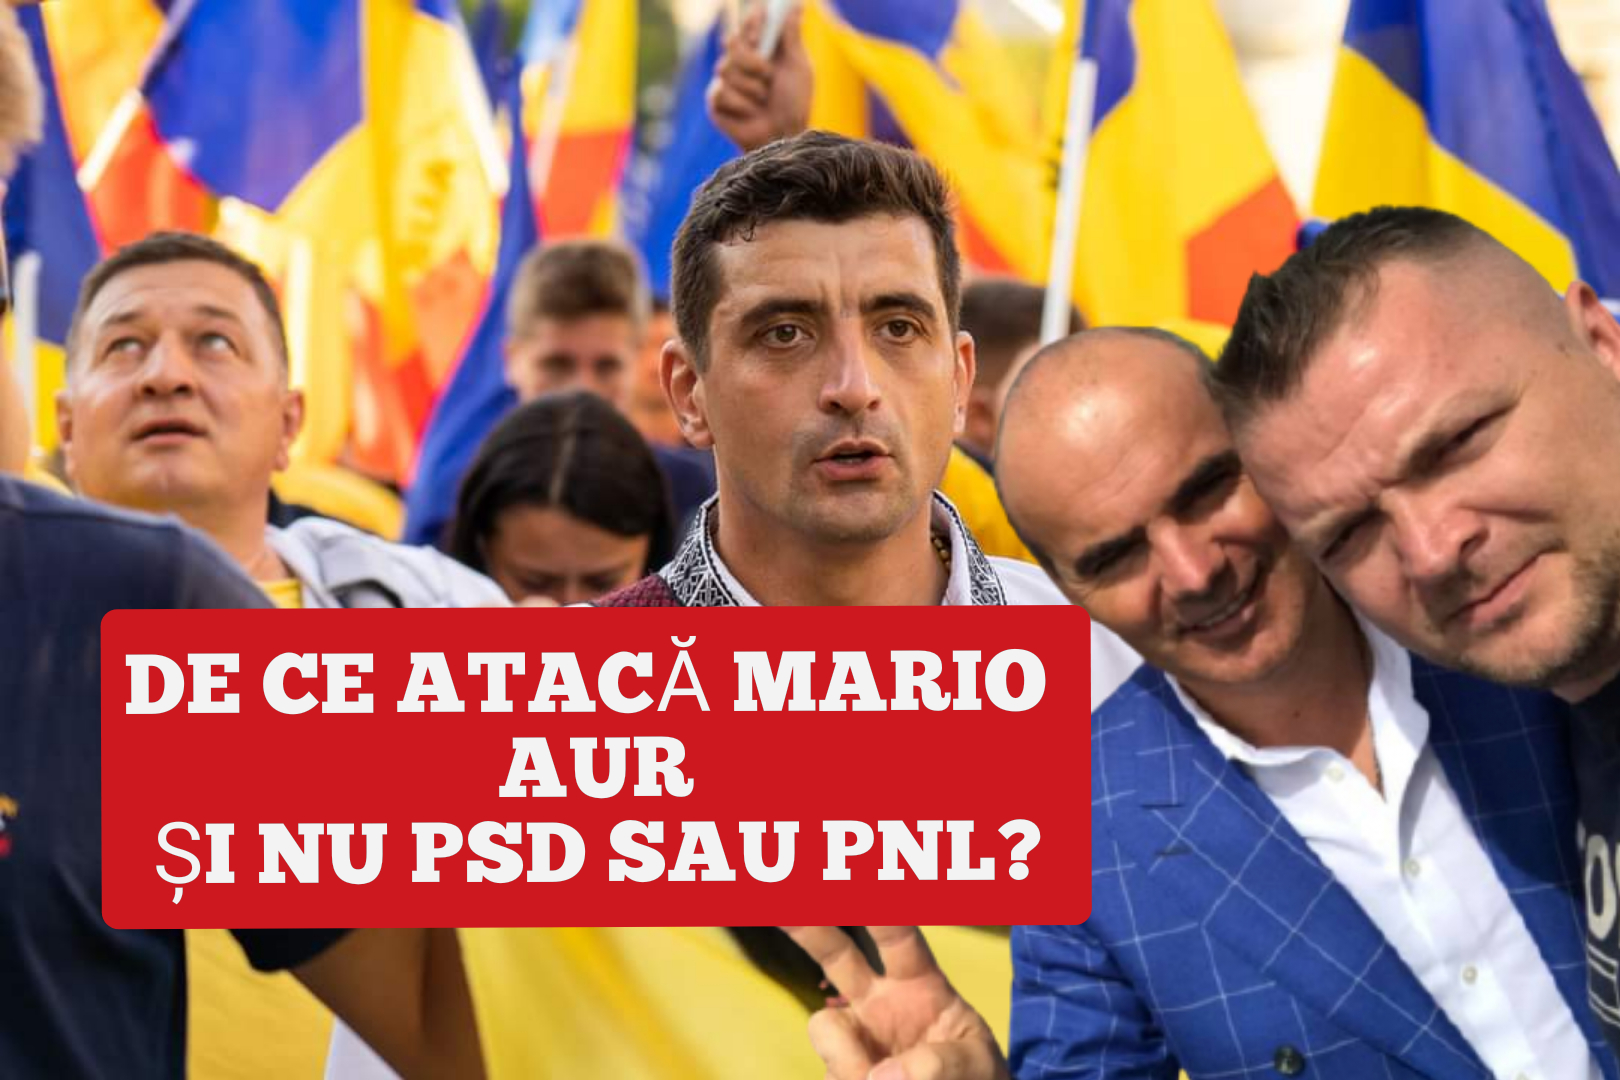 De ce atacă Mario Mocan AUR și nu tâlharii din PSD și PNL? Cu cine ții?